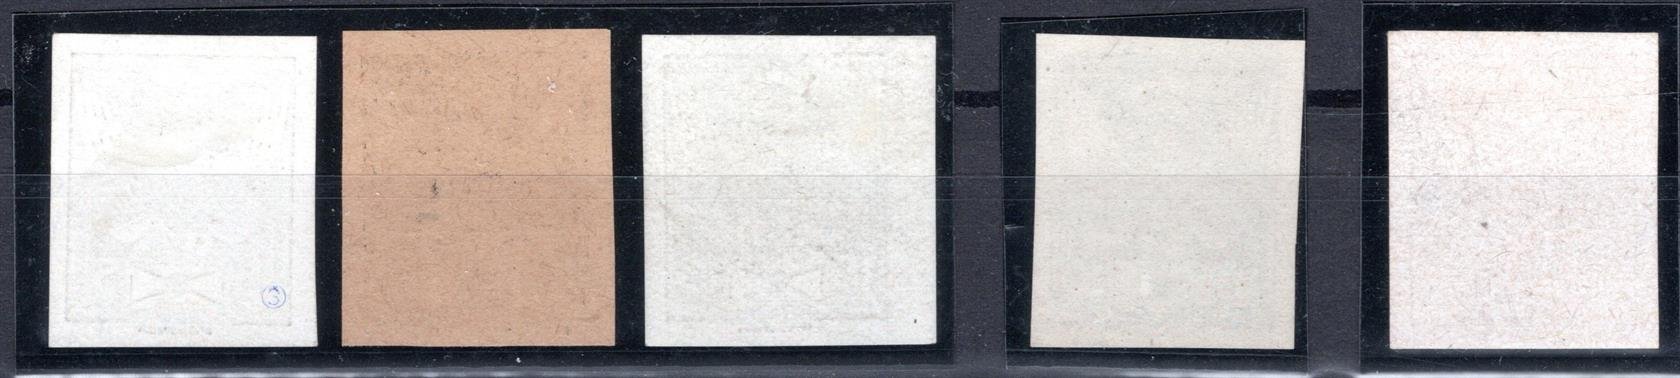 143 - 9 ZT ex, černotisky (4 x papír křídový), u hodnoty 20 h široké " 0 "